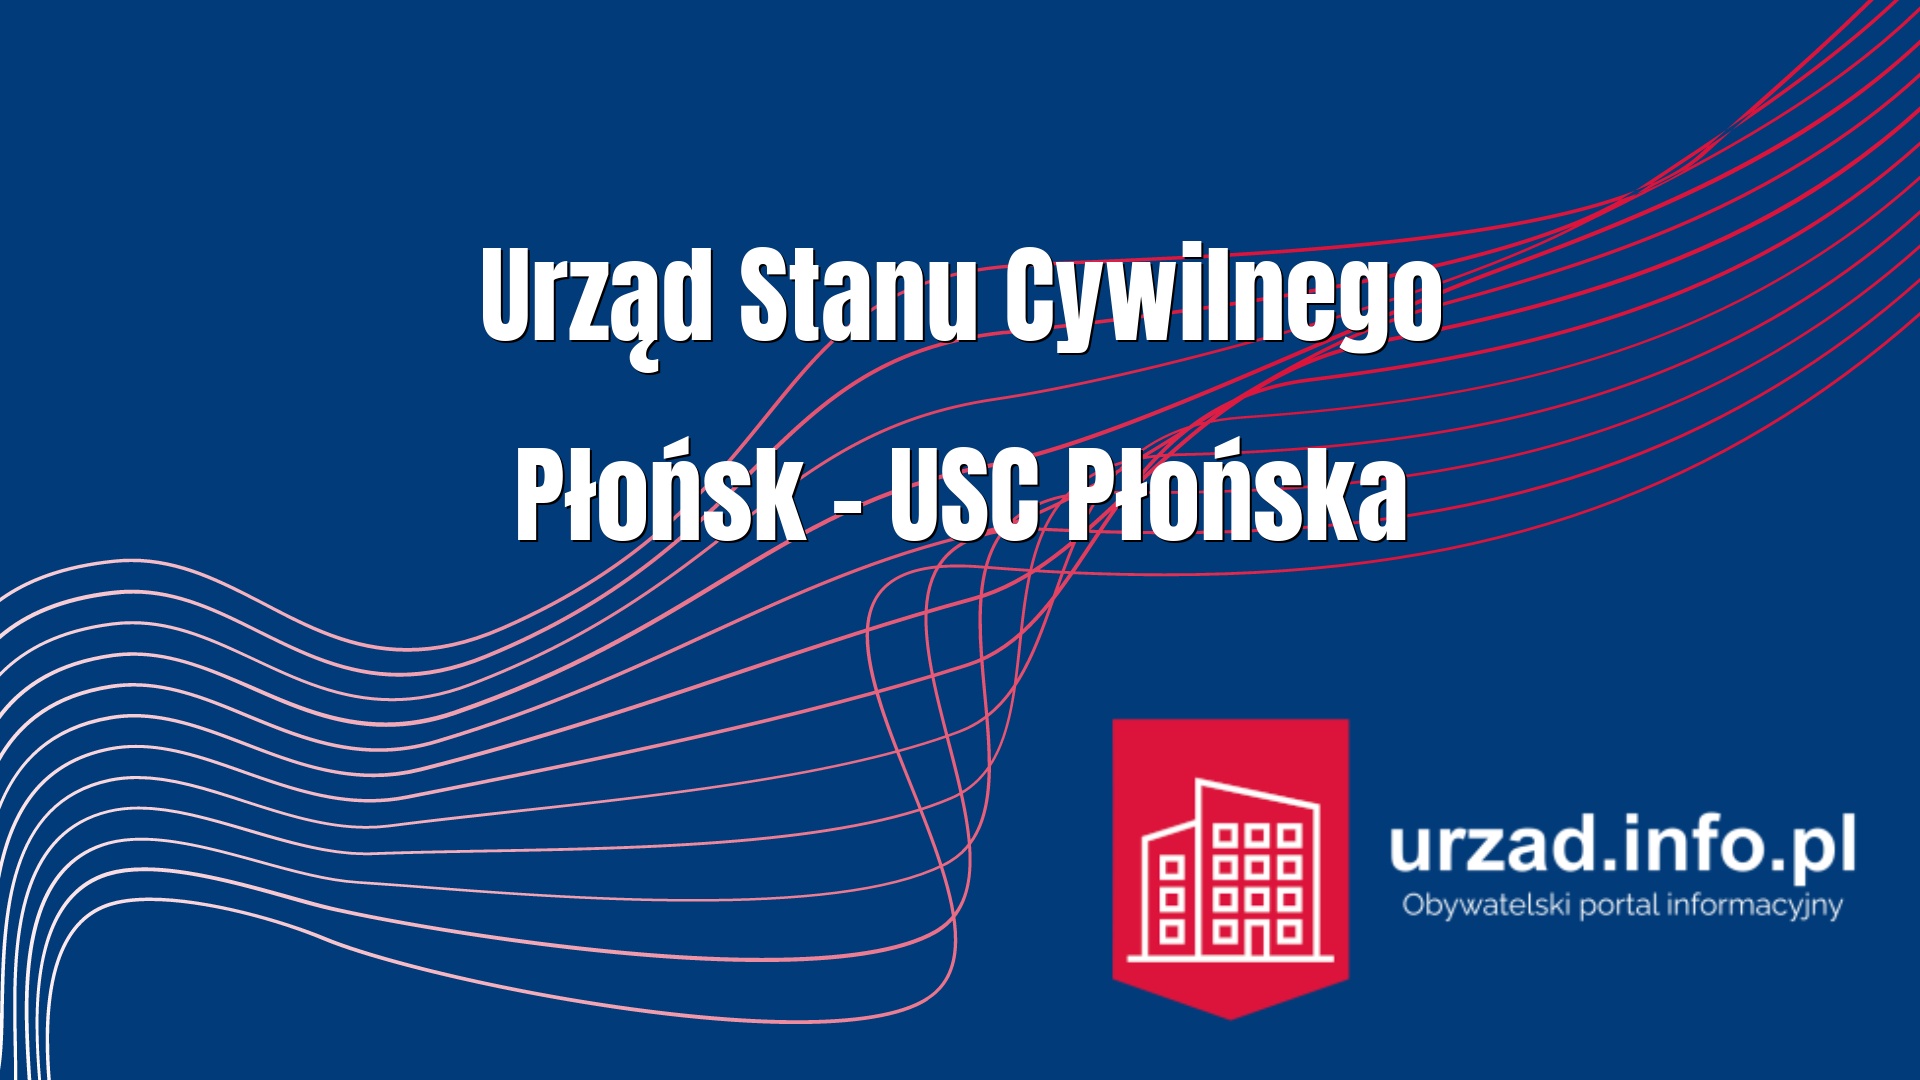 Urząd Stanu Cywilnego Płońsk – USC Płońska